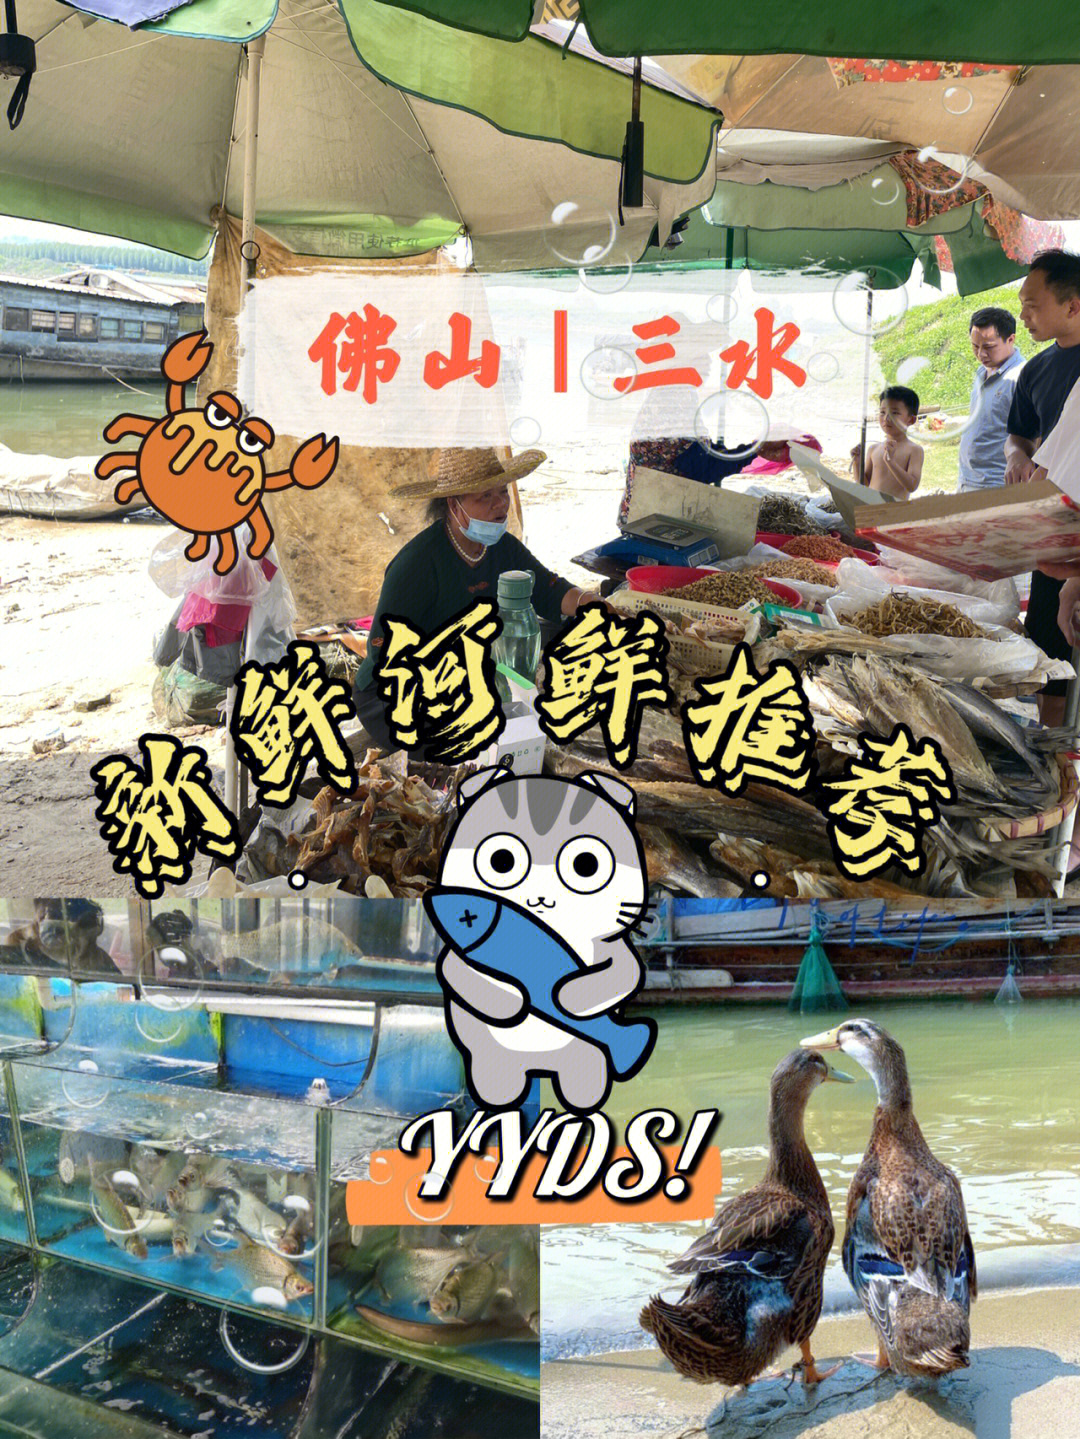 佛山三水新鲜打捞的河鲜位于北江大缇饭店门口上缇就能看到很多渔民在